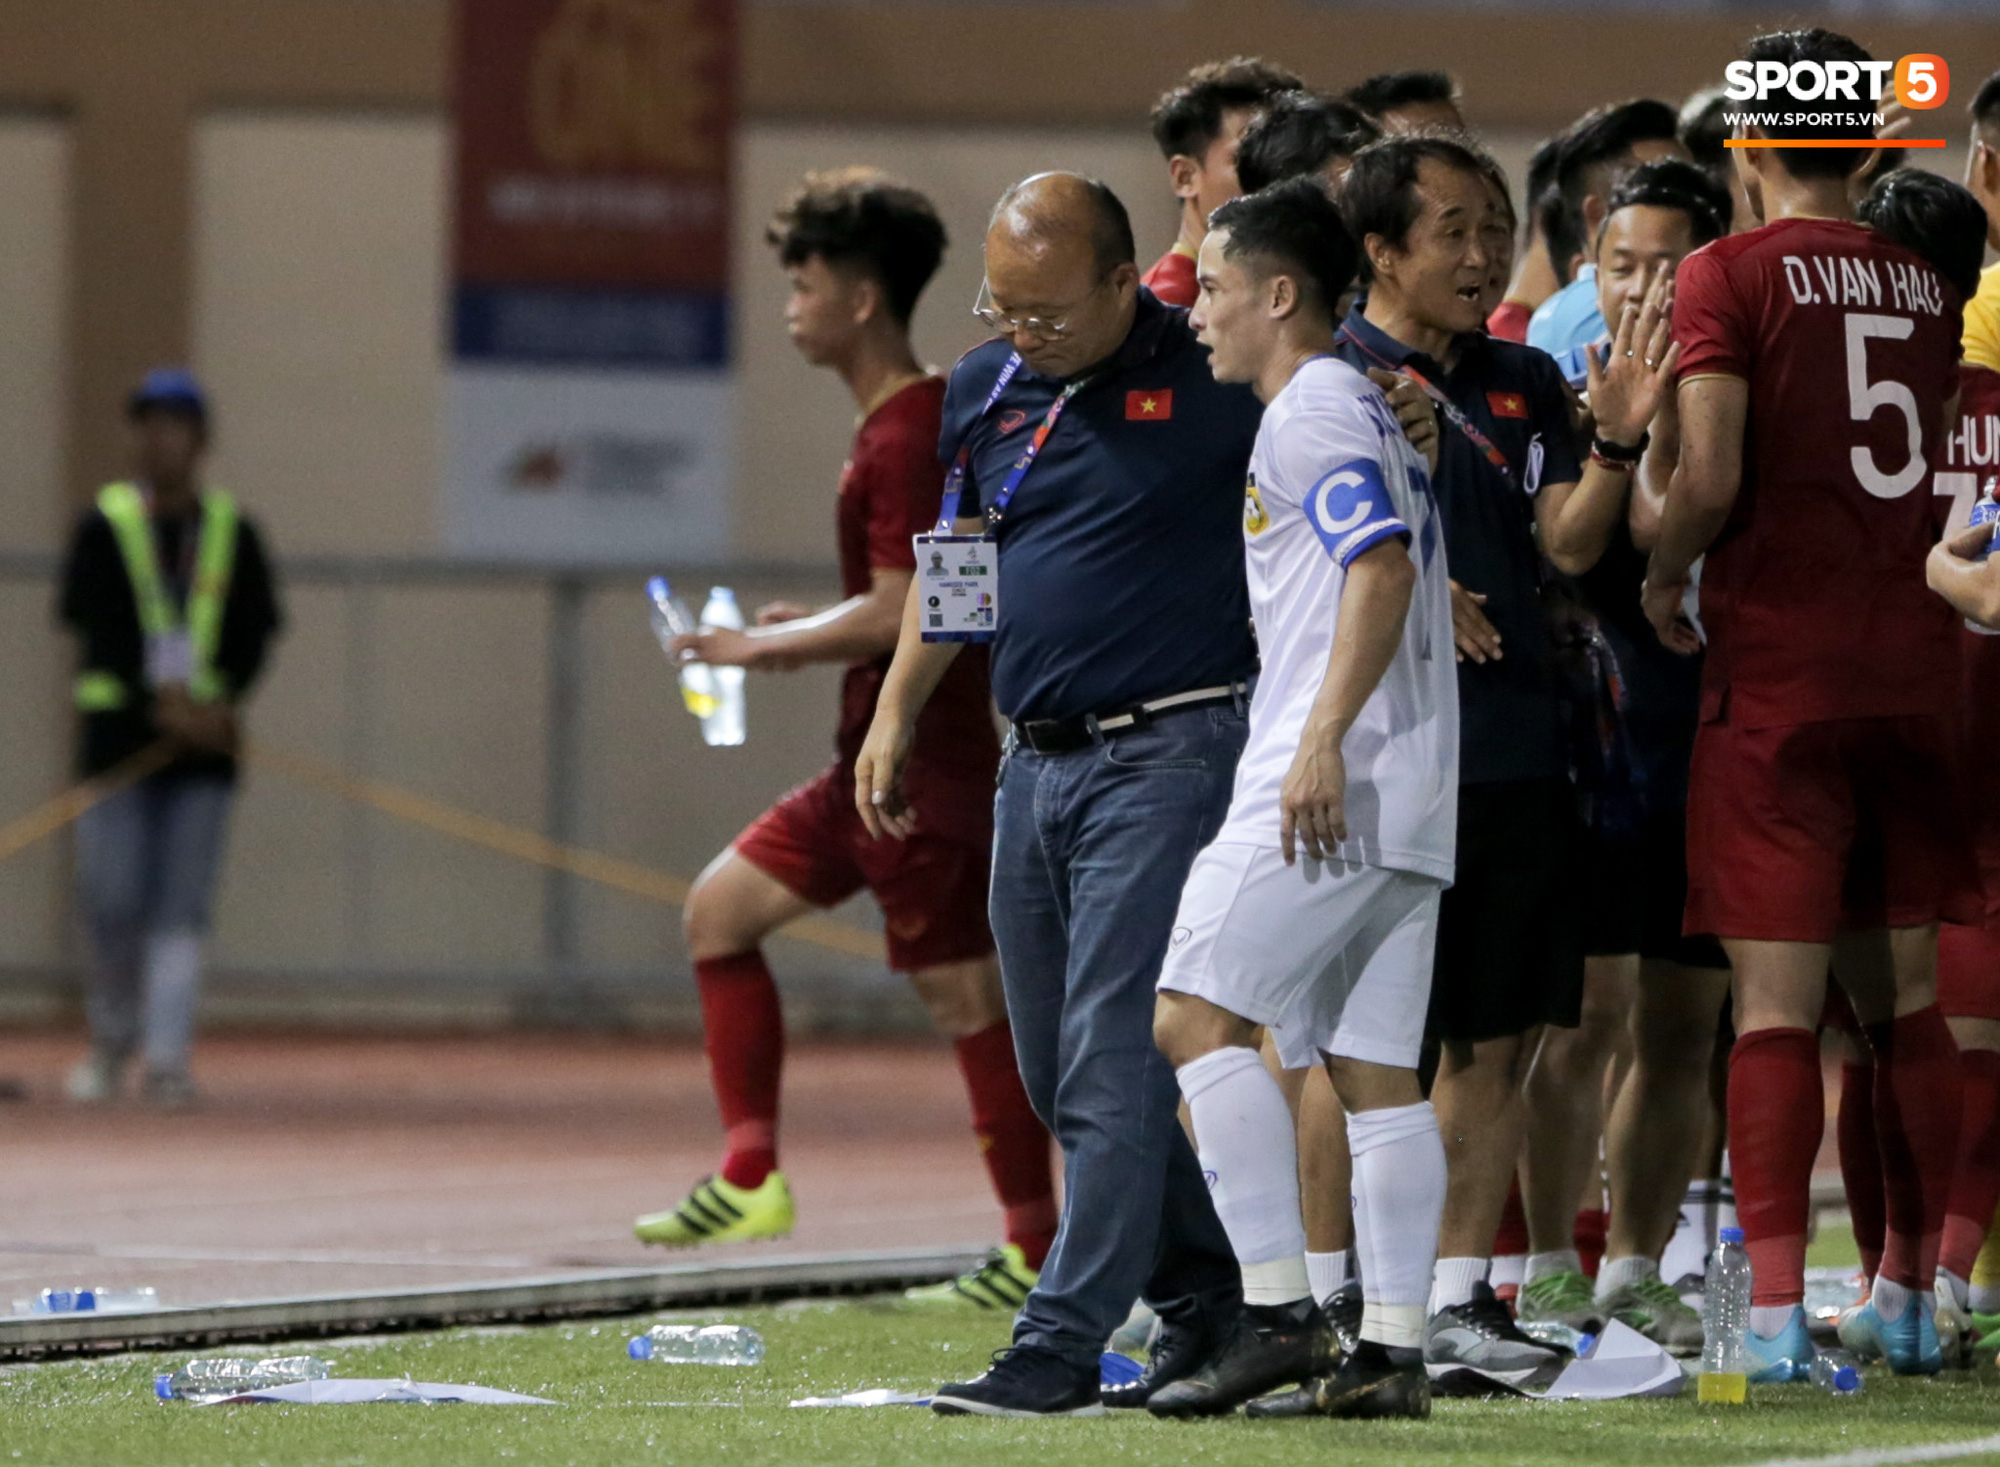 Messi Lào tìm bằng được HLV Park Hang-seo để trò chuyện, đáp lại là nụ cười động viên của thuyền trưởng U22 Việt Nam - Ảnh 2.